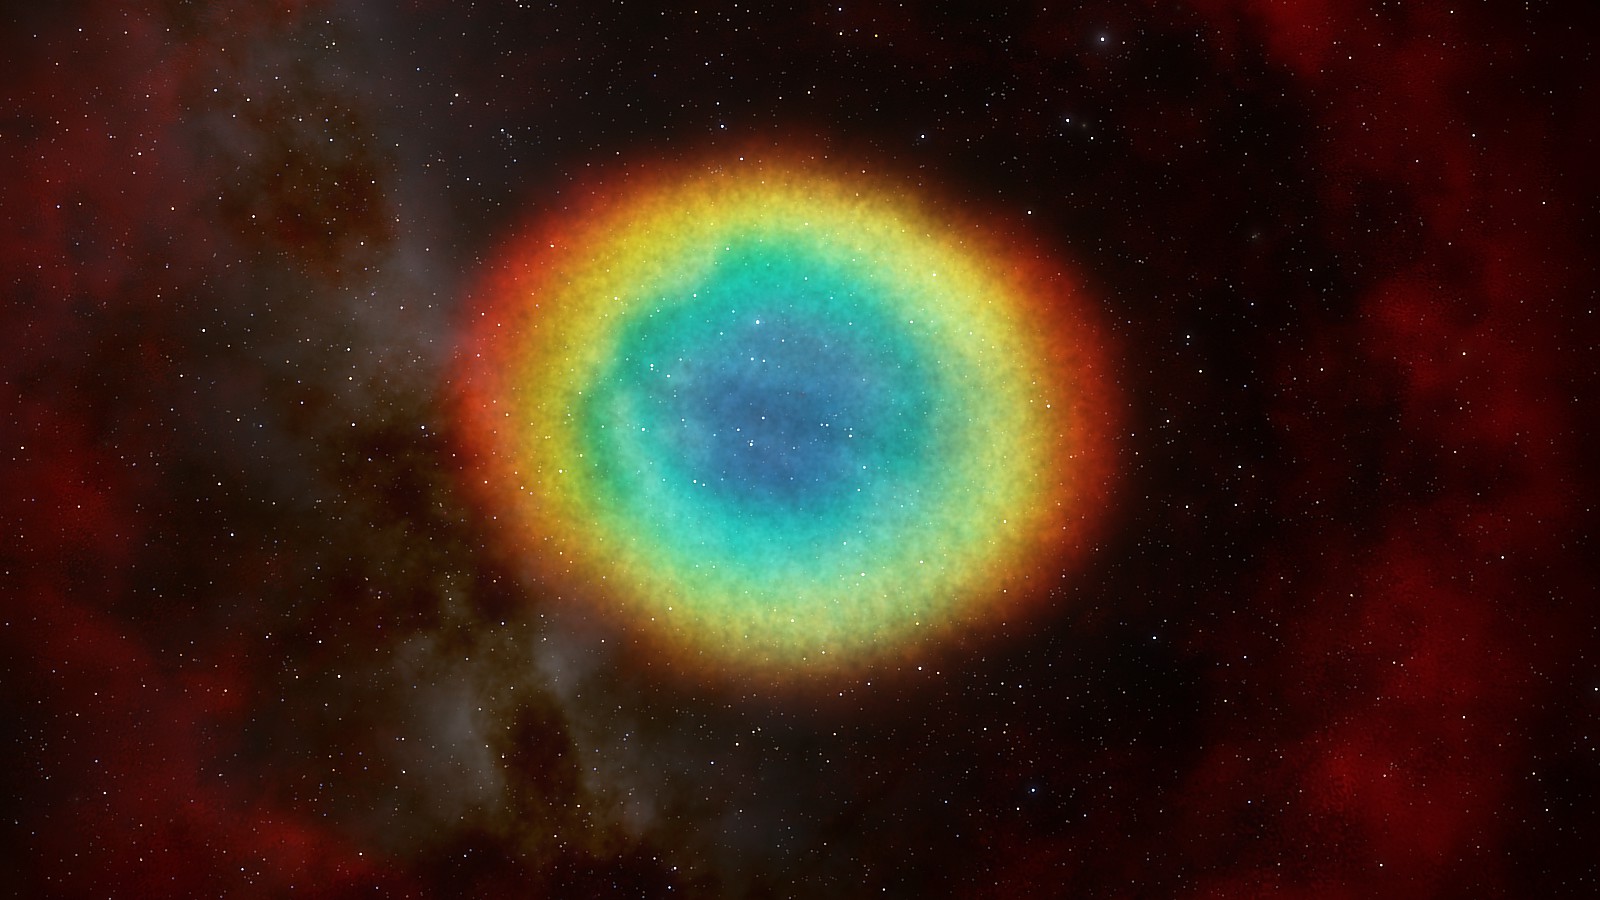 The Ring Nebula: spaceengine